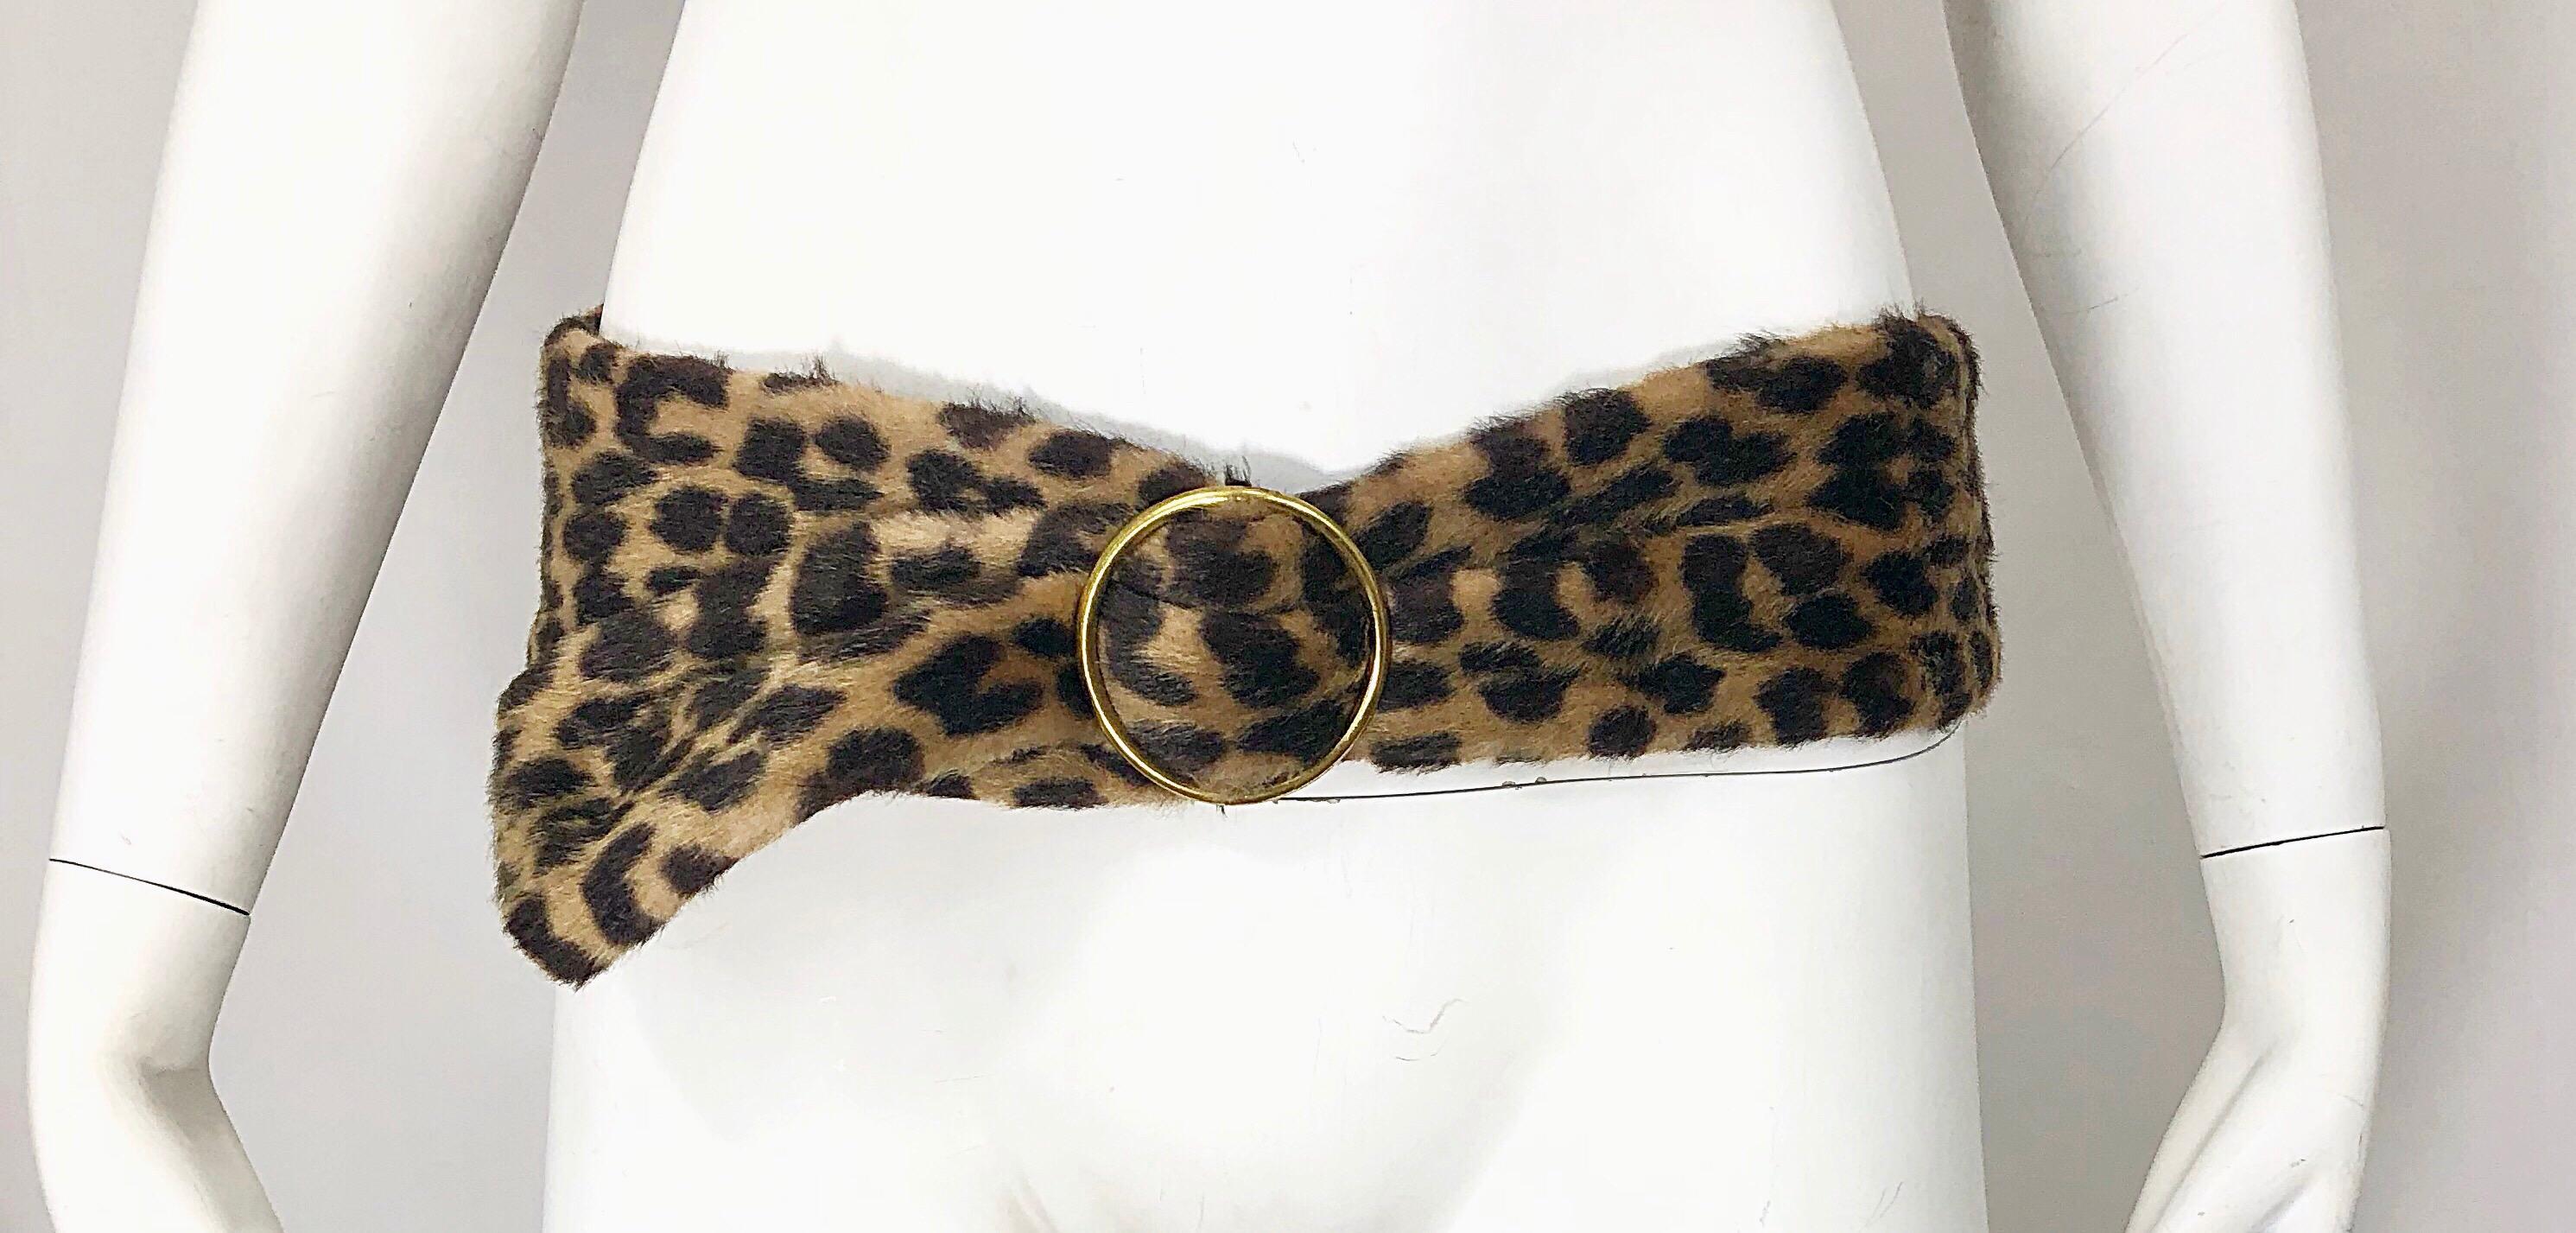 Chic ceinture en fausse fourrure DAME NEW YORK du milieu des années 60 en léopard / guépard ! Il s'agit d'une fausse fourrure douce avec l'imprimé animal classique. La ceinture à boucle dorée permet de le porter pour un large éventail de tailles.